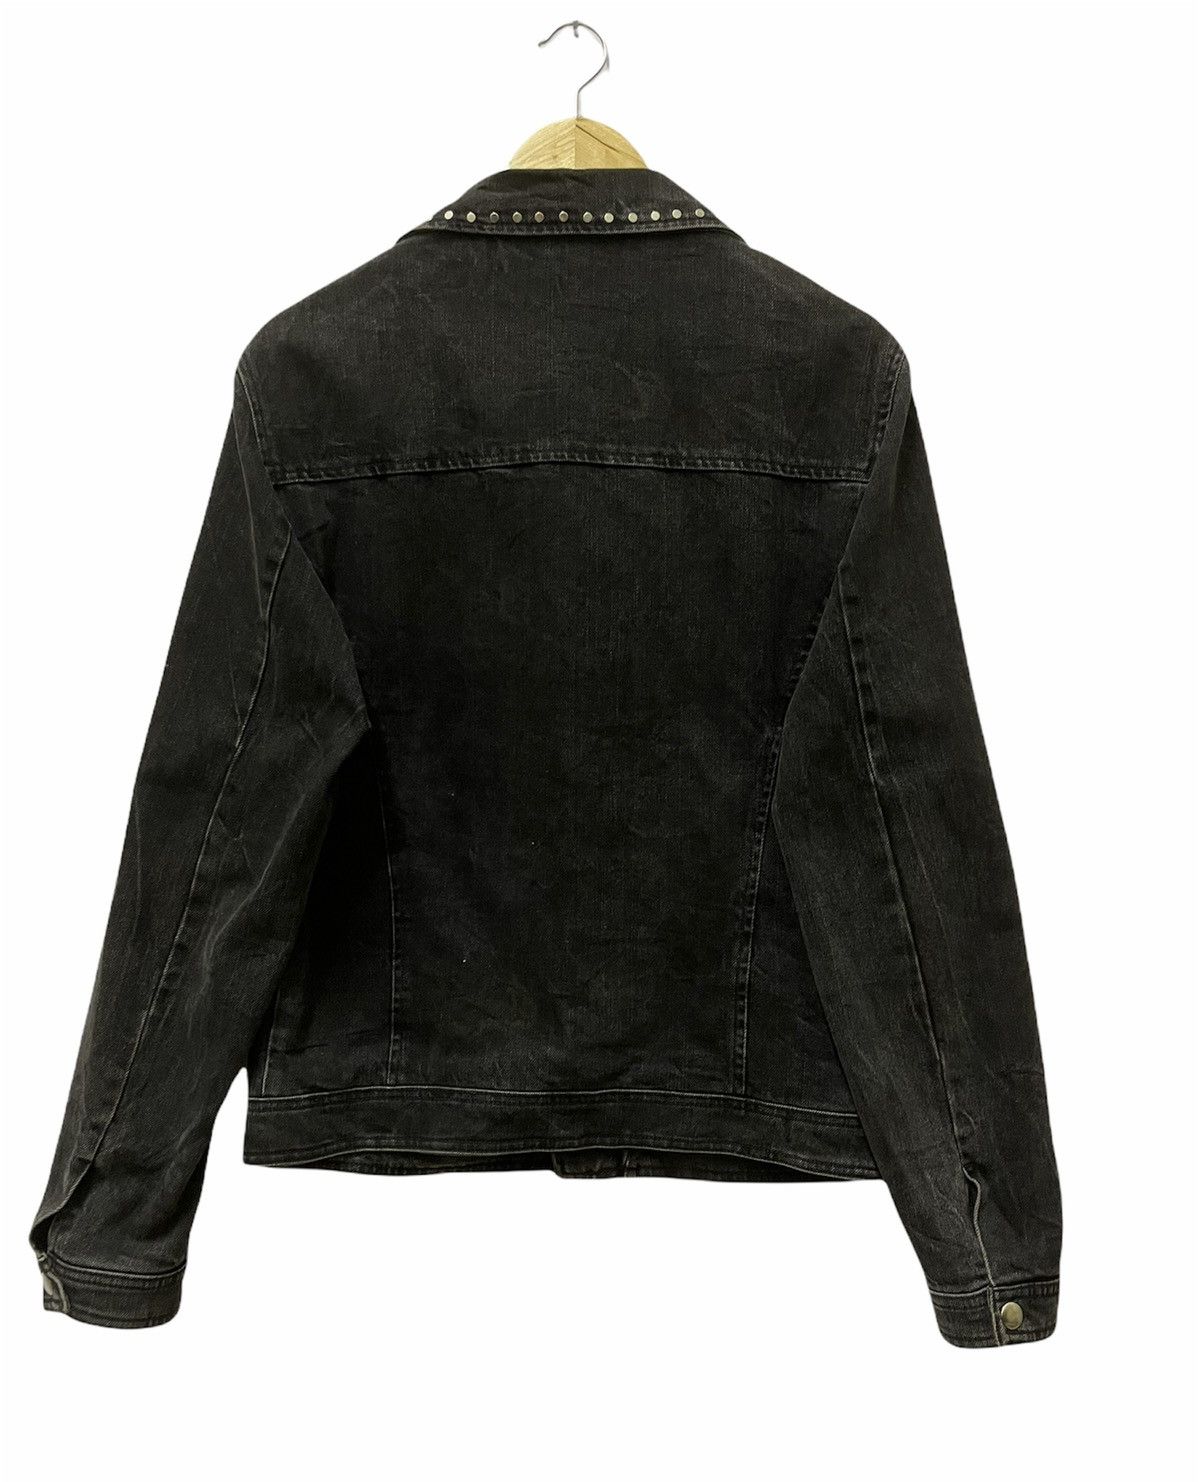 Zara Zara Man Denim Jacket Black Medium Size US M / EU 48-50 / 2 - 4 Thumbnail